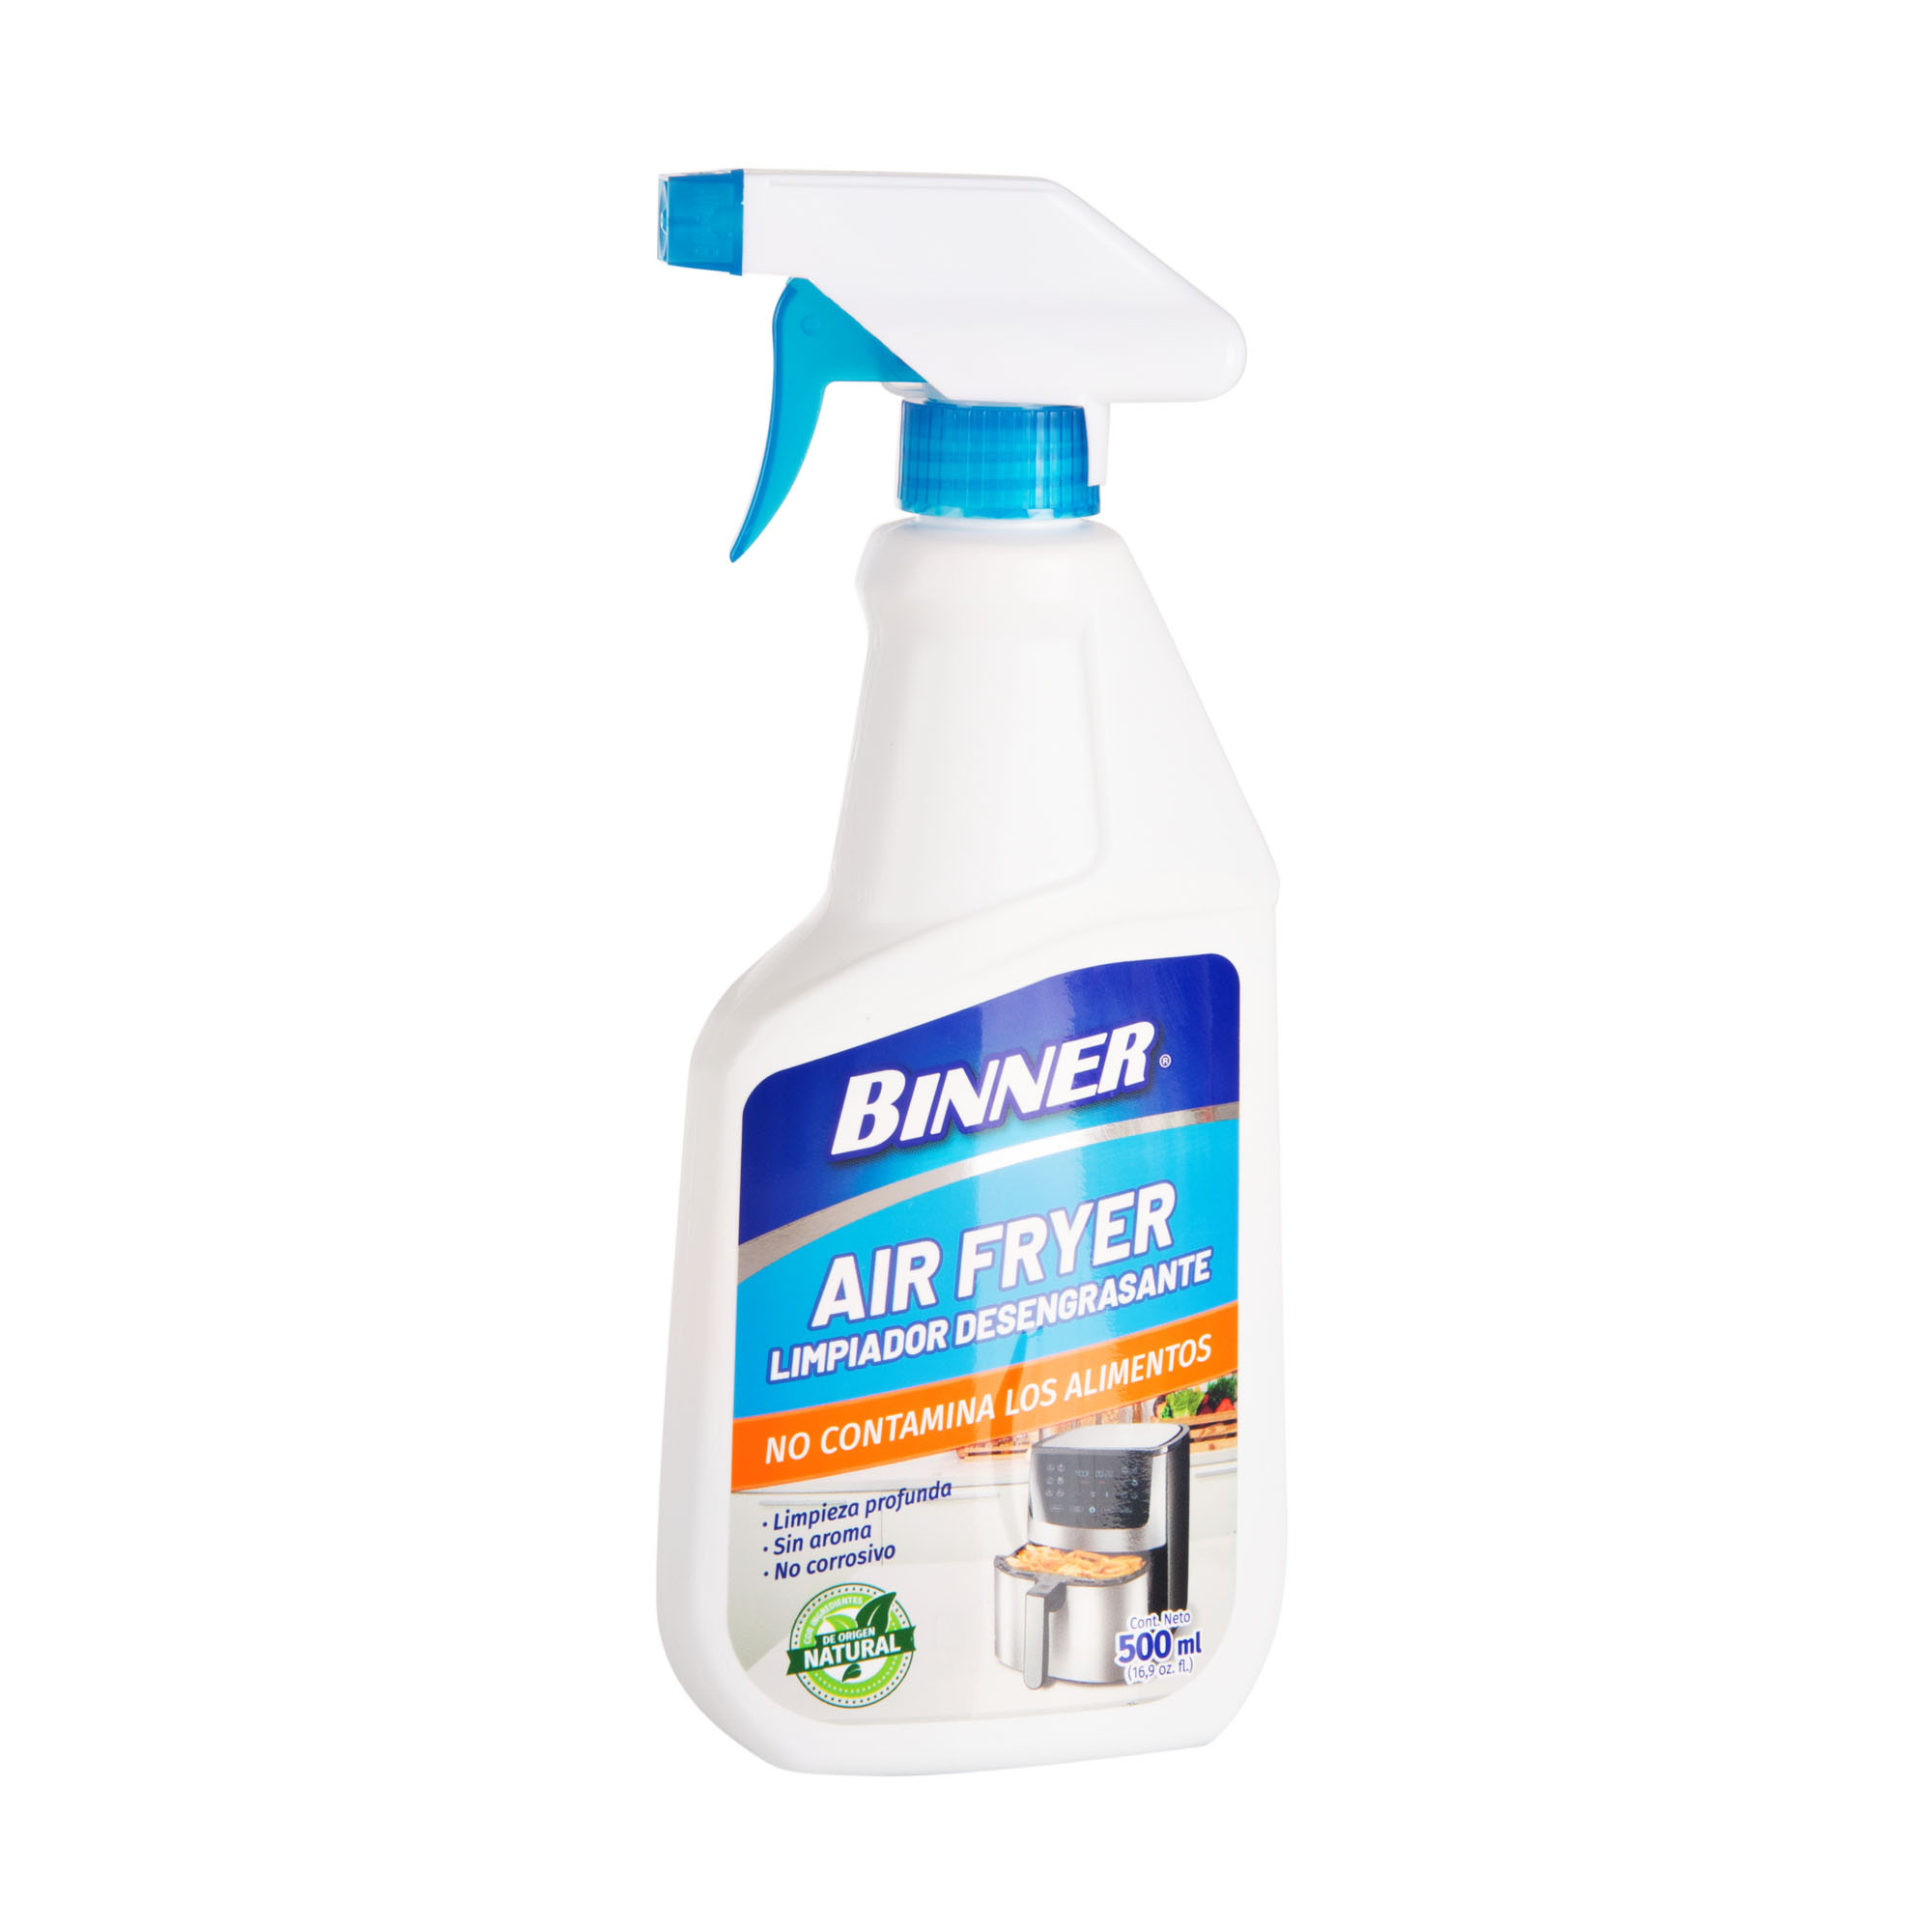 Limpiadores y desinfectantes - FANAIR, distribuidor de ventilación